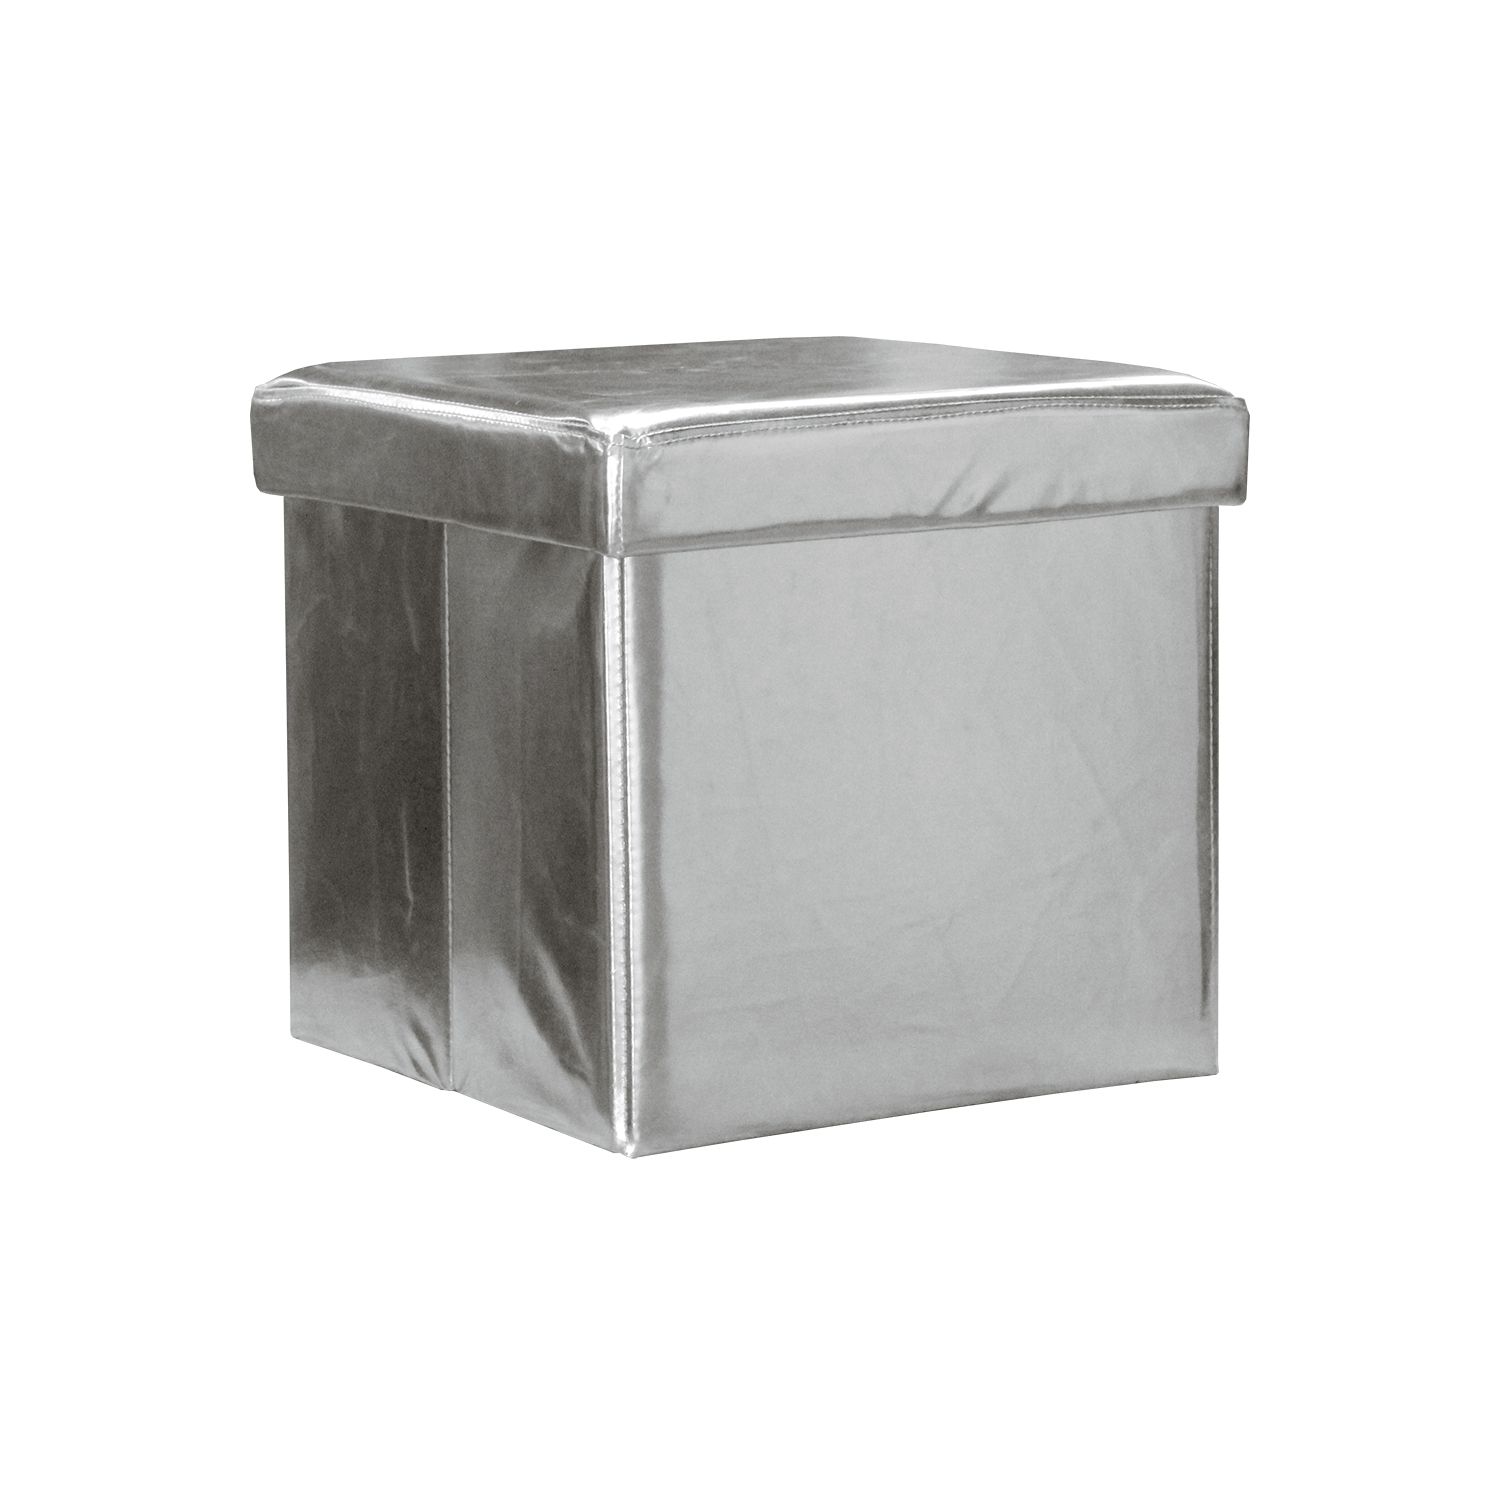 Sedací úložný box stříbrný - IDEA nábytek